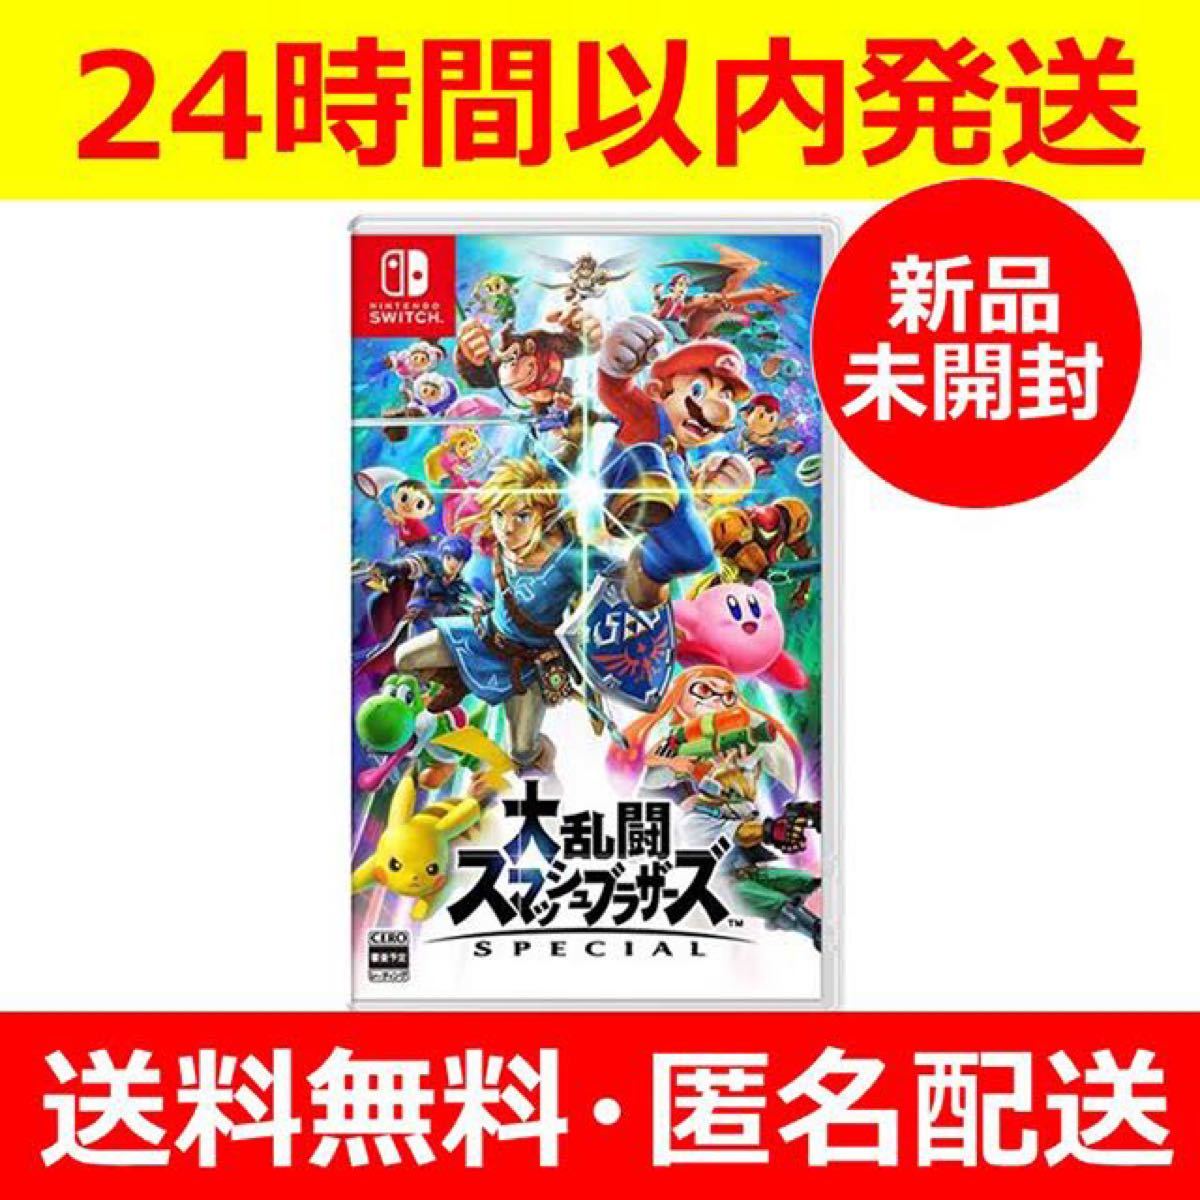 【新品】大乱闘スマッシュブラザーズ SPECIAL Nintendo Switch